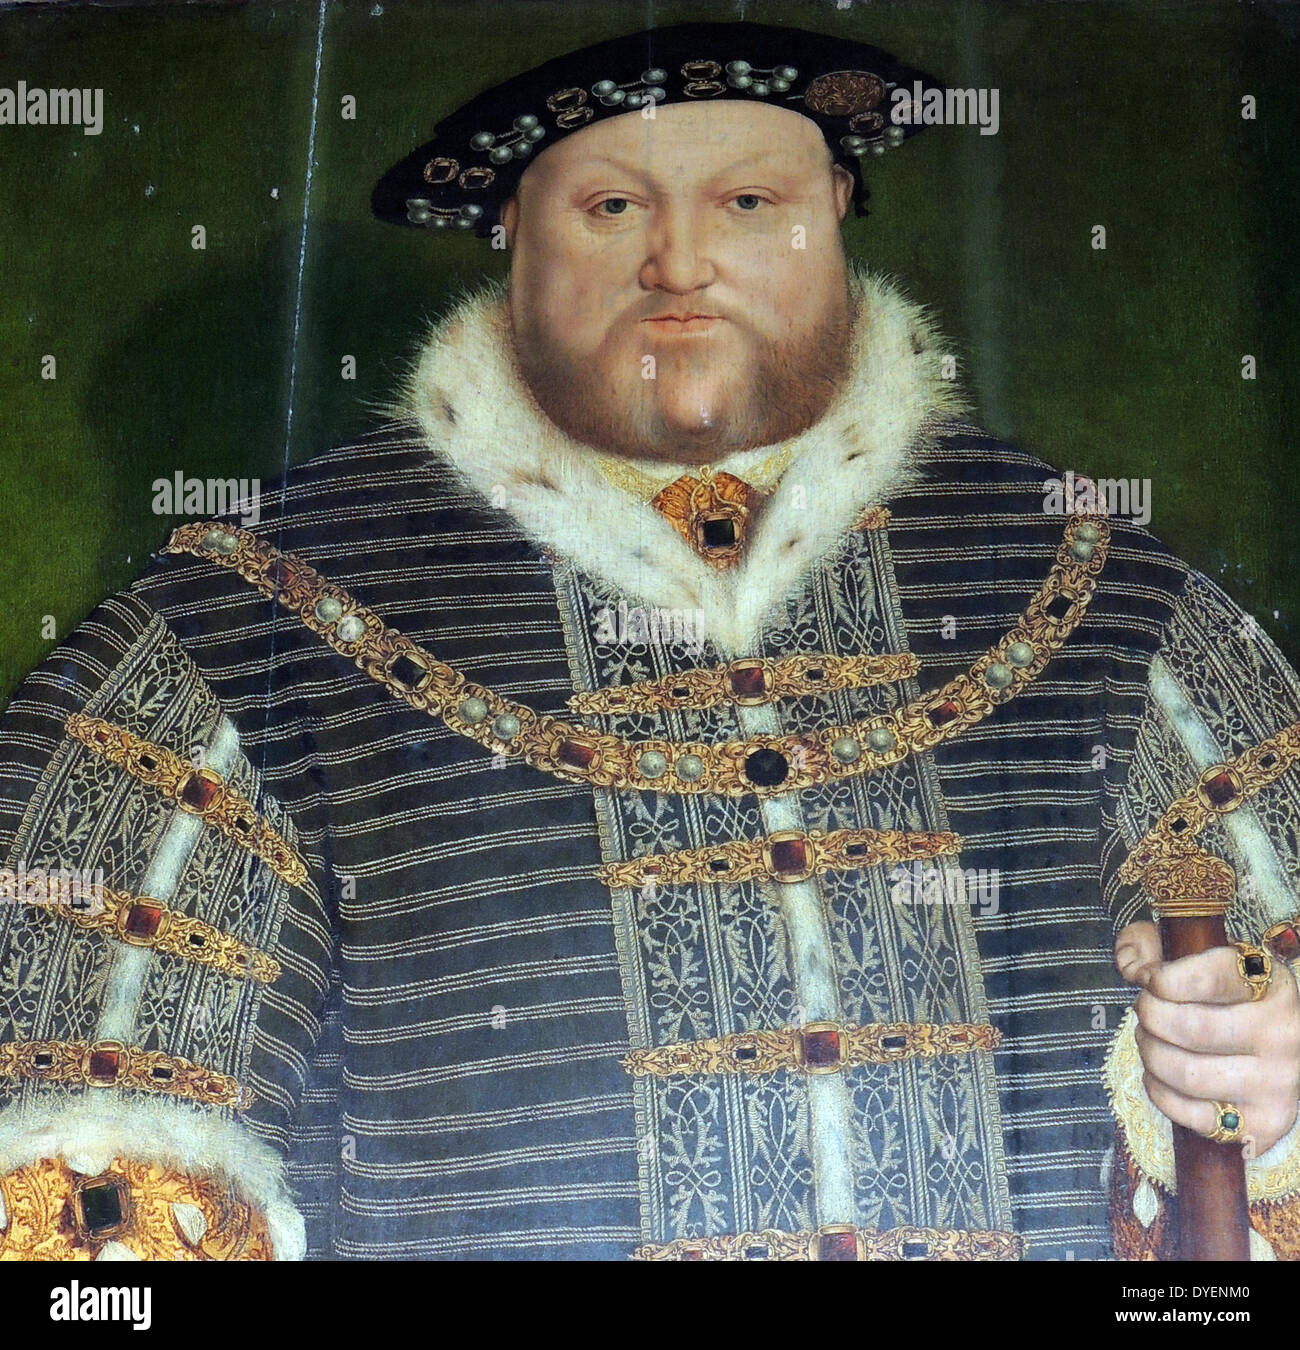 Henry VIII (28 juin 1491 - 28 janvier 1547) fut roi d'Angleterre à partir de 21 avril 1509 jusqu'à sa mort. Il était seigneur, et plus tard le roi, de l'Irlande. studio de Hans Holbein, le château de Warwick Banque D'Images